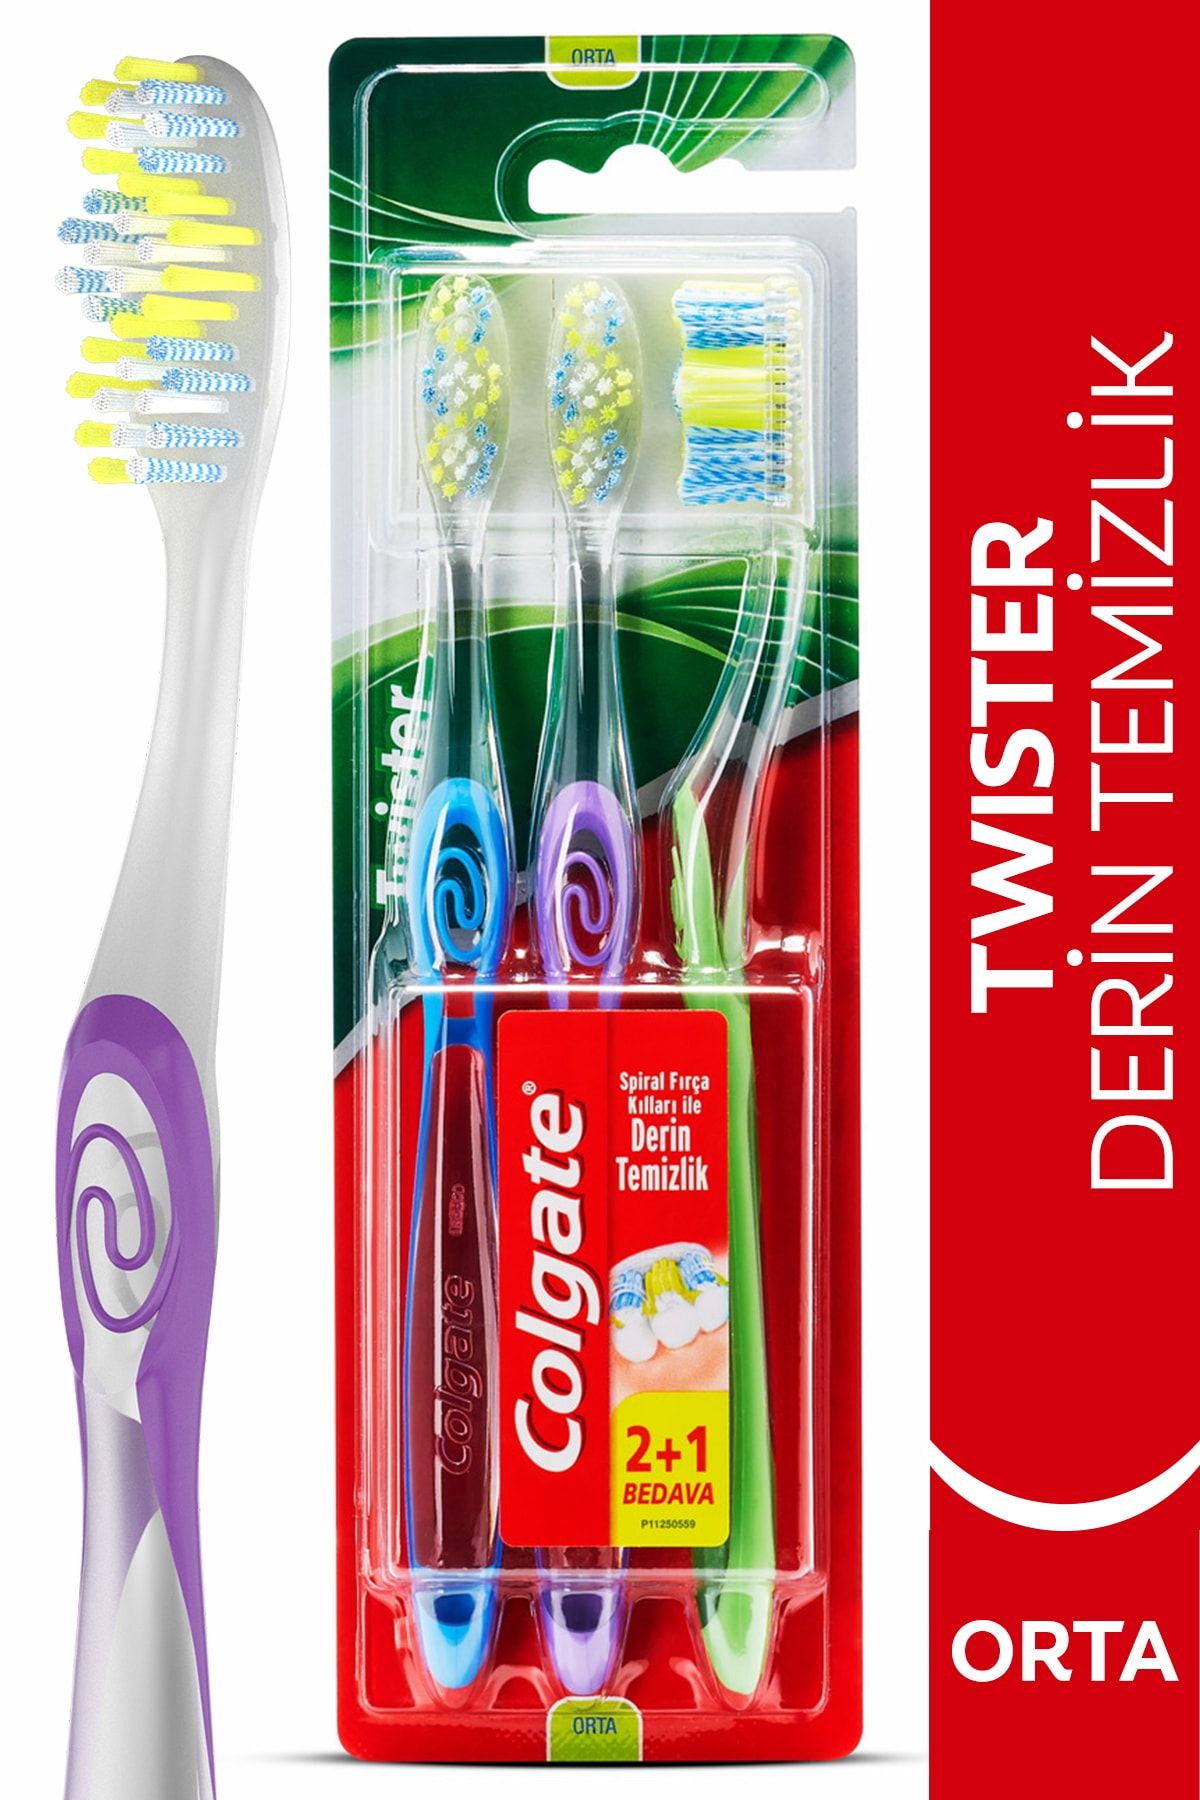 Colgate Twister Derin Temizlik Orta Diş Fırçası 2+1